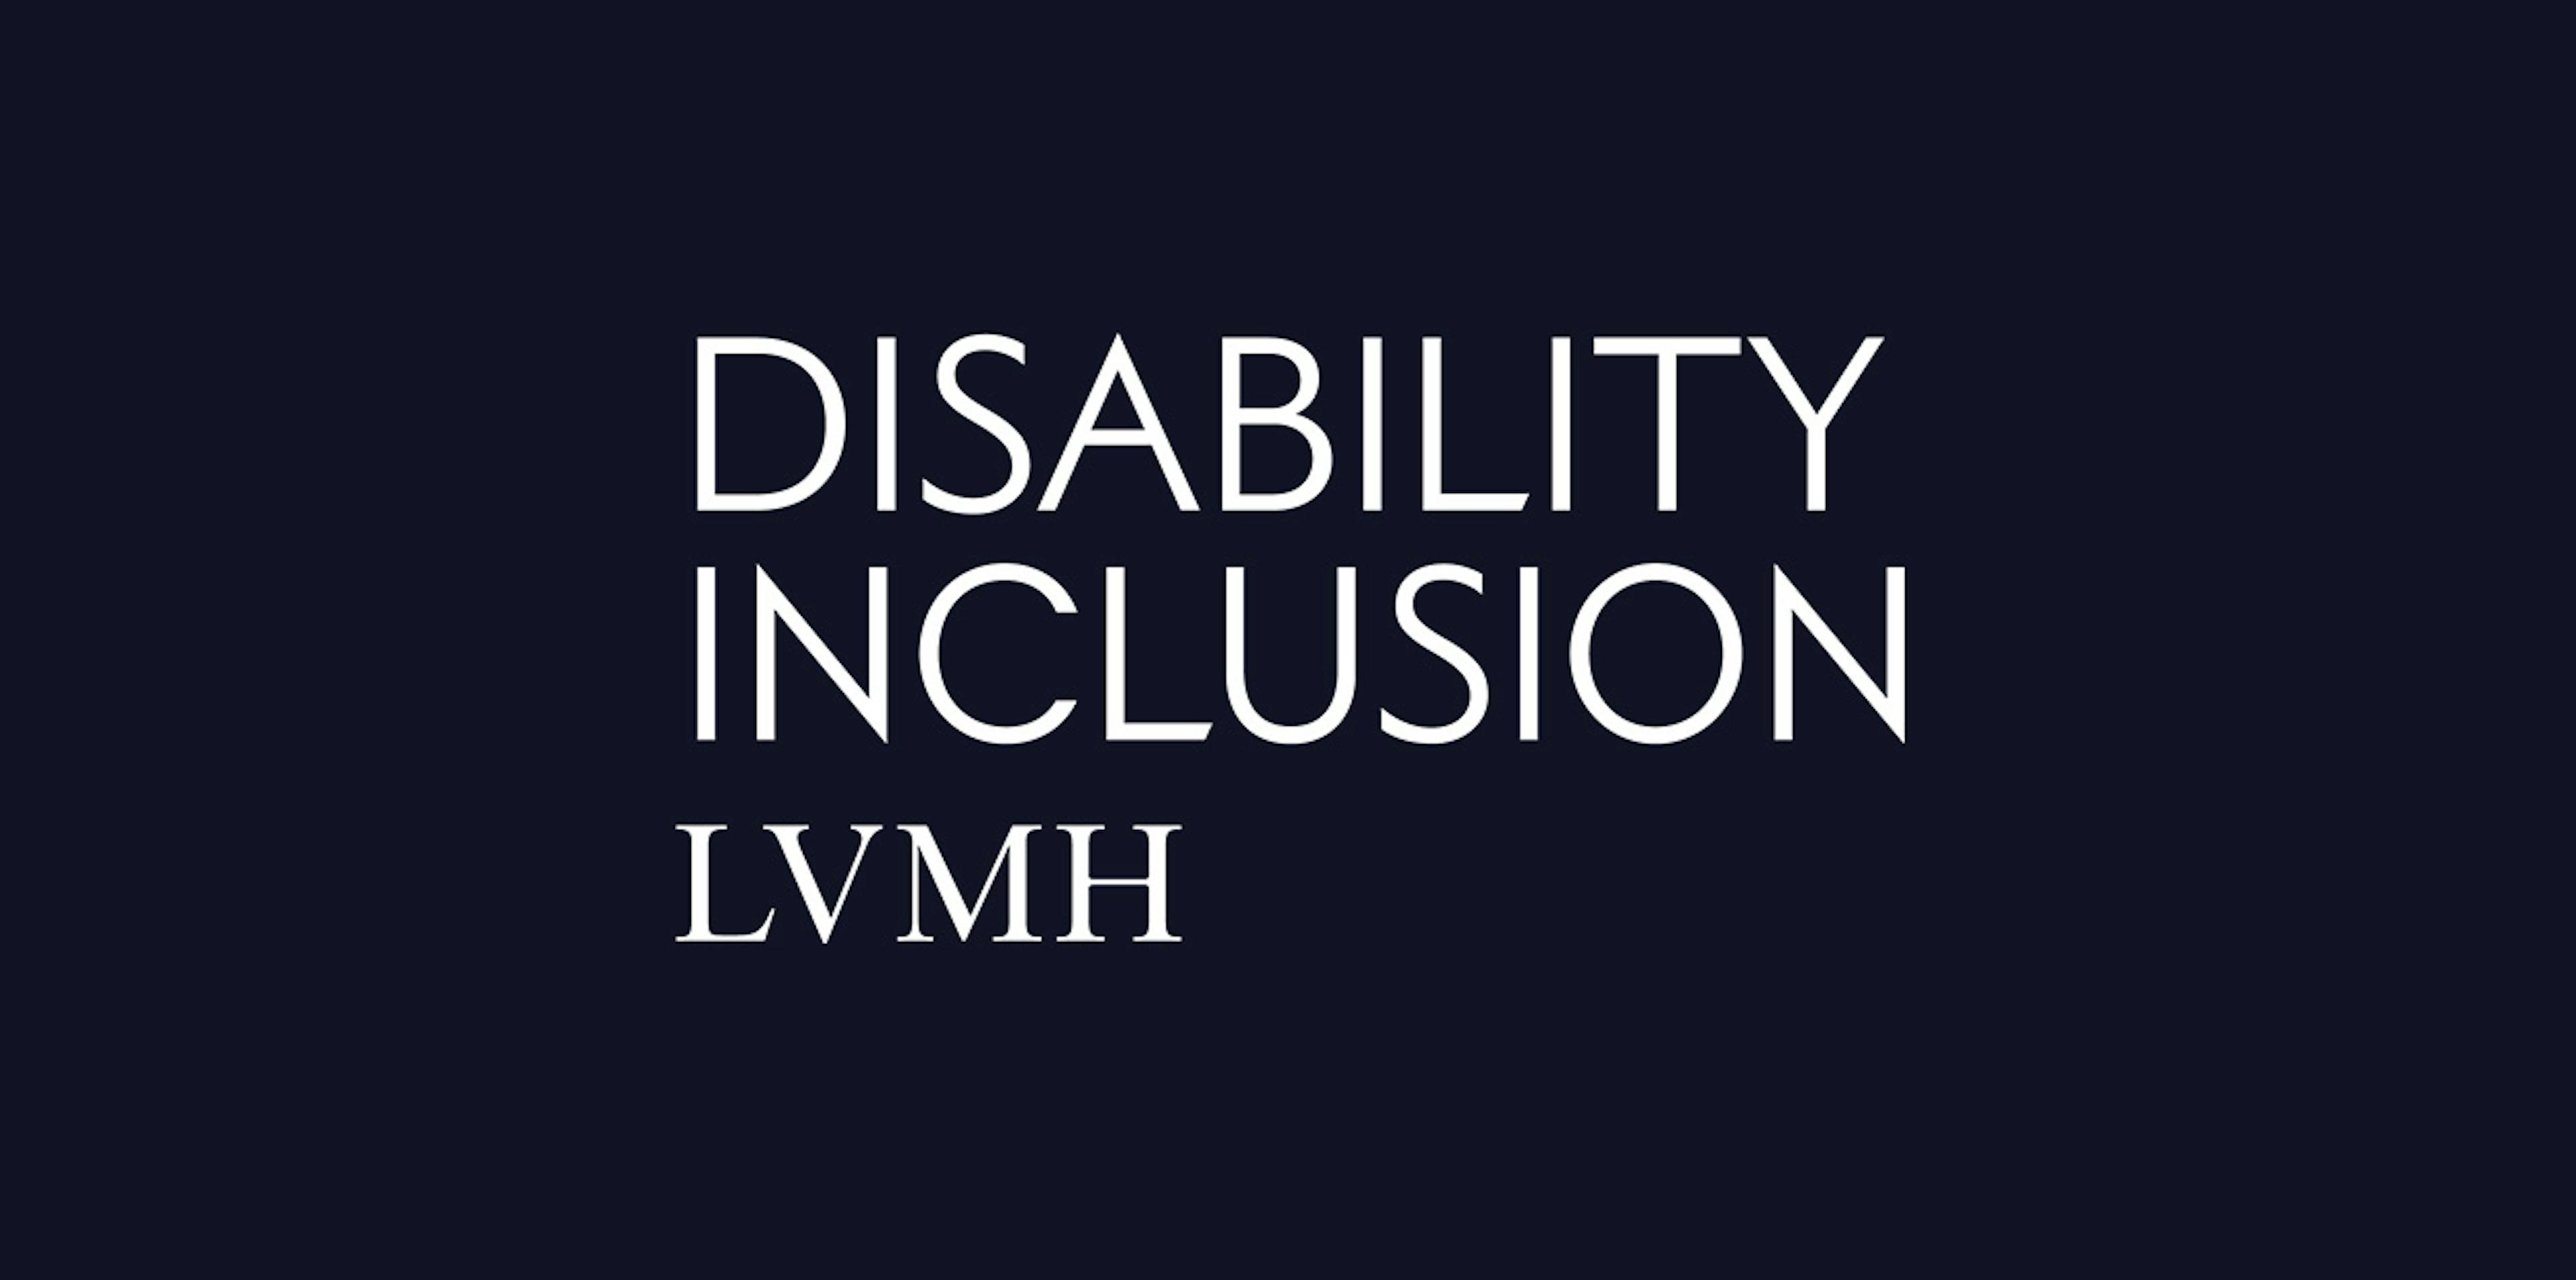 LVMH Disability Inclusion logo